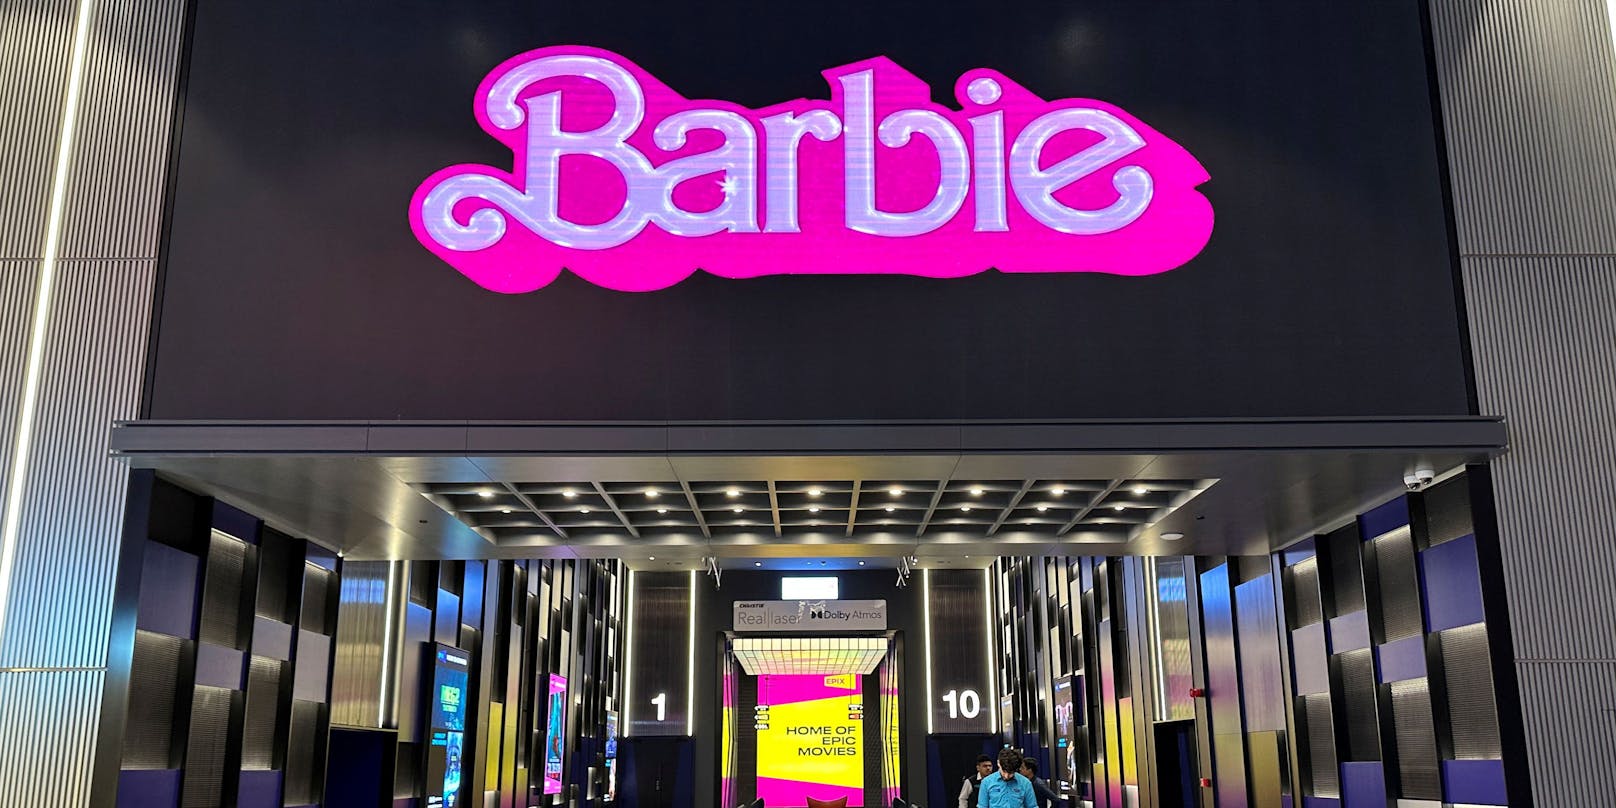 "Barbie" soll im Libanon nicht gezeigt werden dürfen.